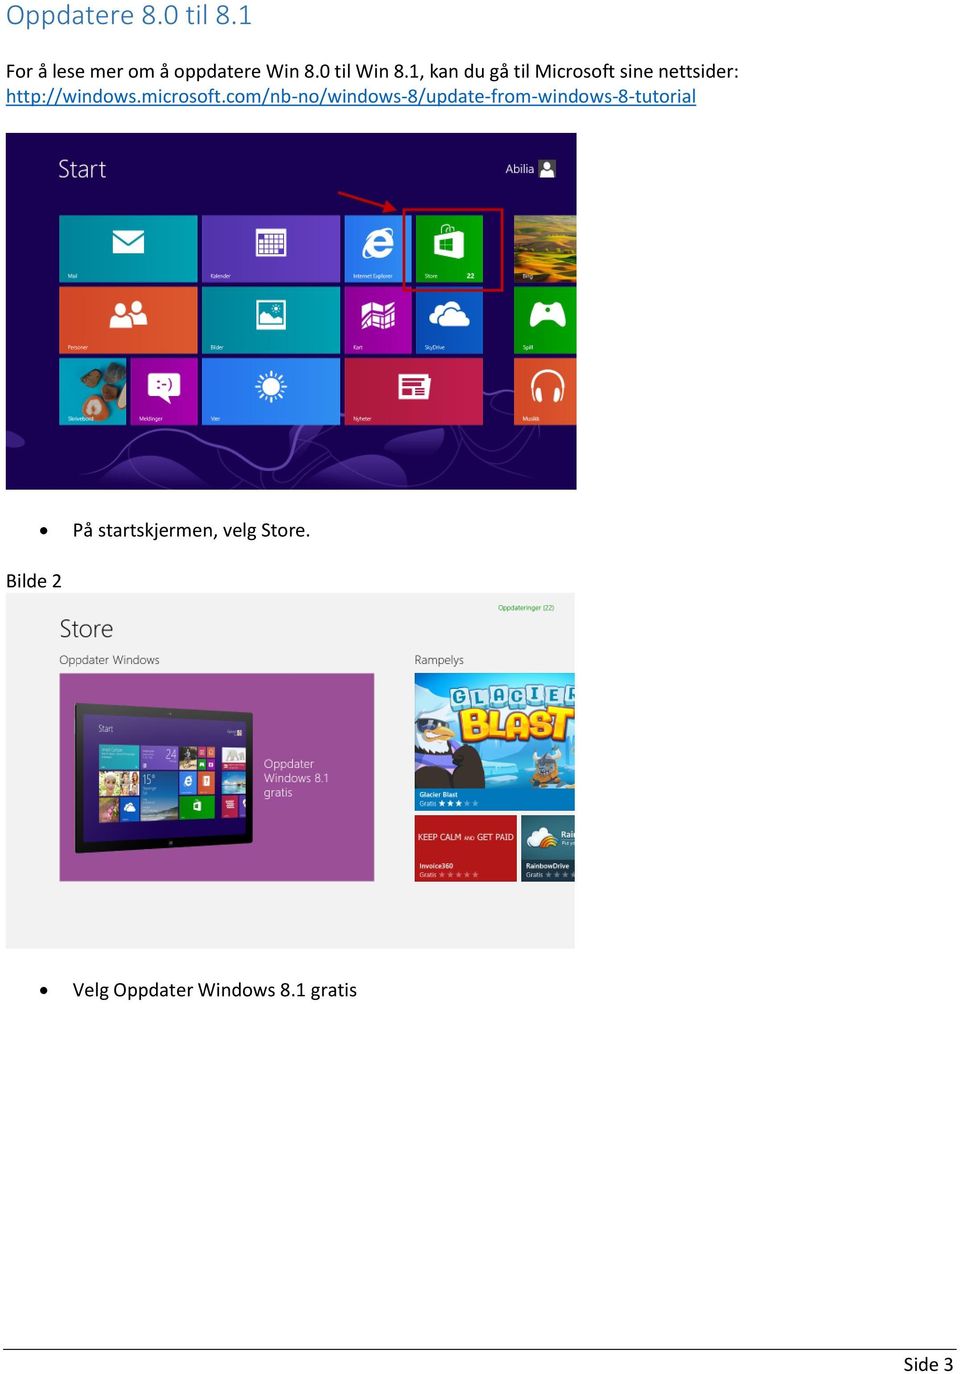 1, kan du gå til Microsoft sine nettsider: http://windows.